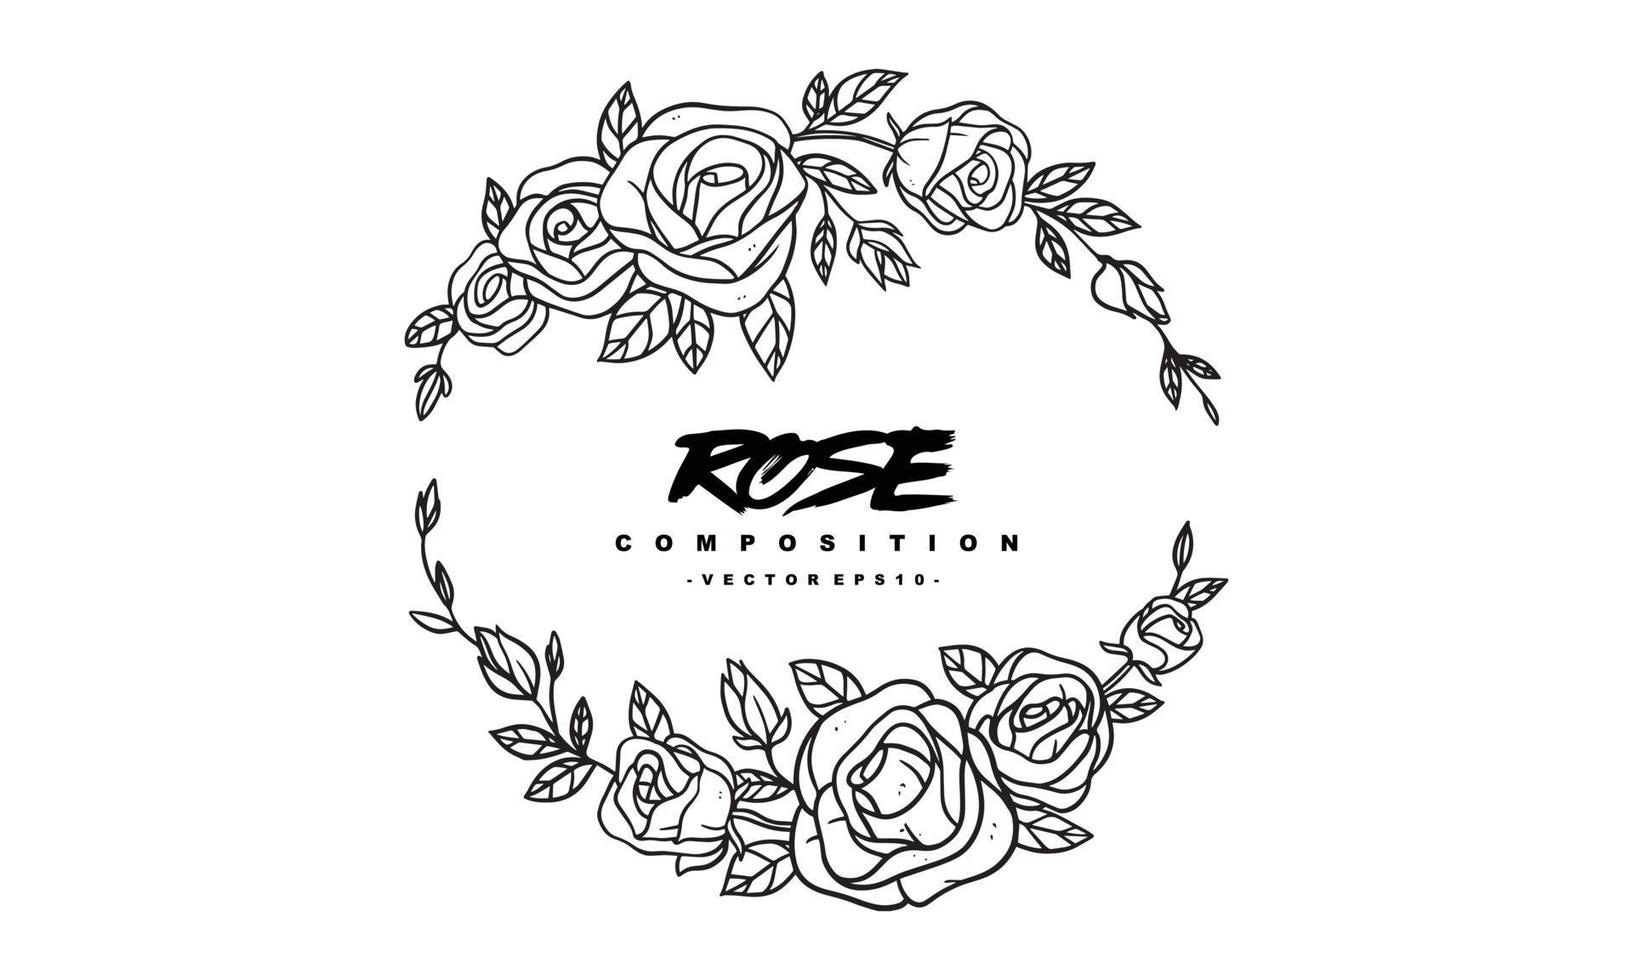 composizione di rose per la progettazione di inviti di nozze, piante e fiori per un'elegante cornice per lettere, illustrazione vettoriale disegnata a mano per un design romantico e vintage